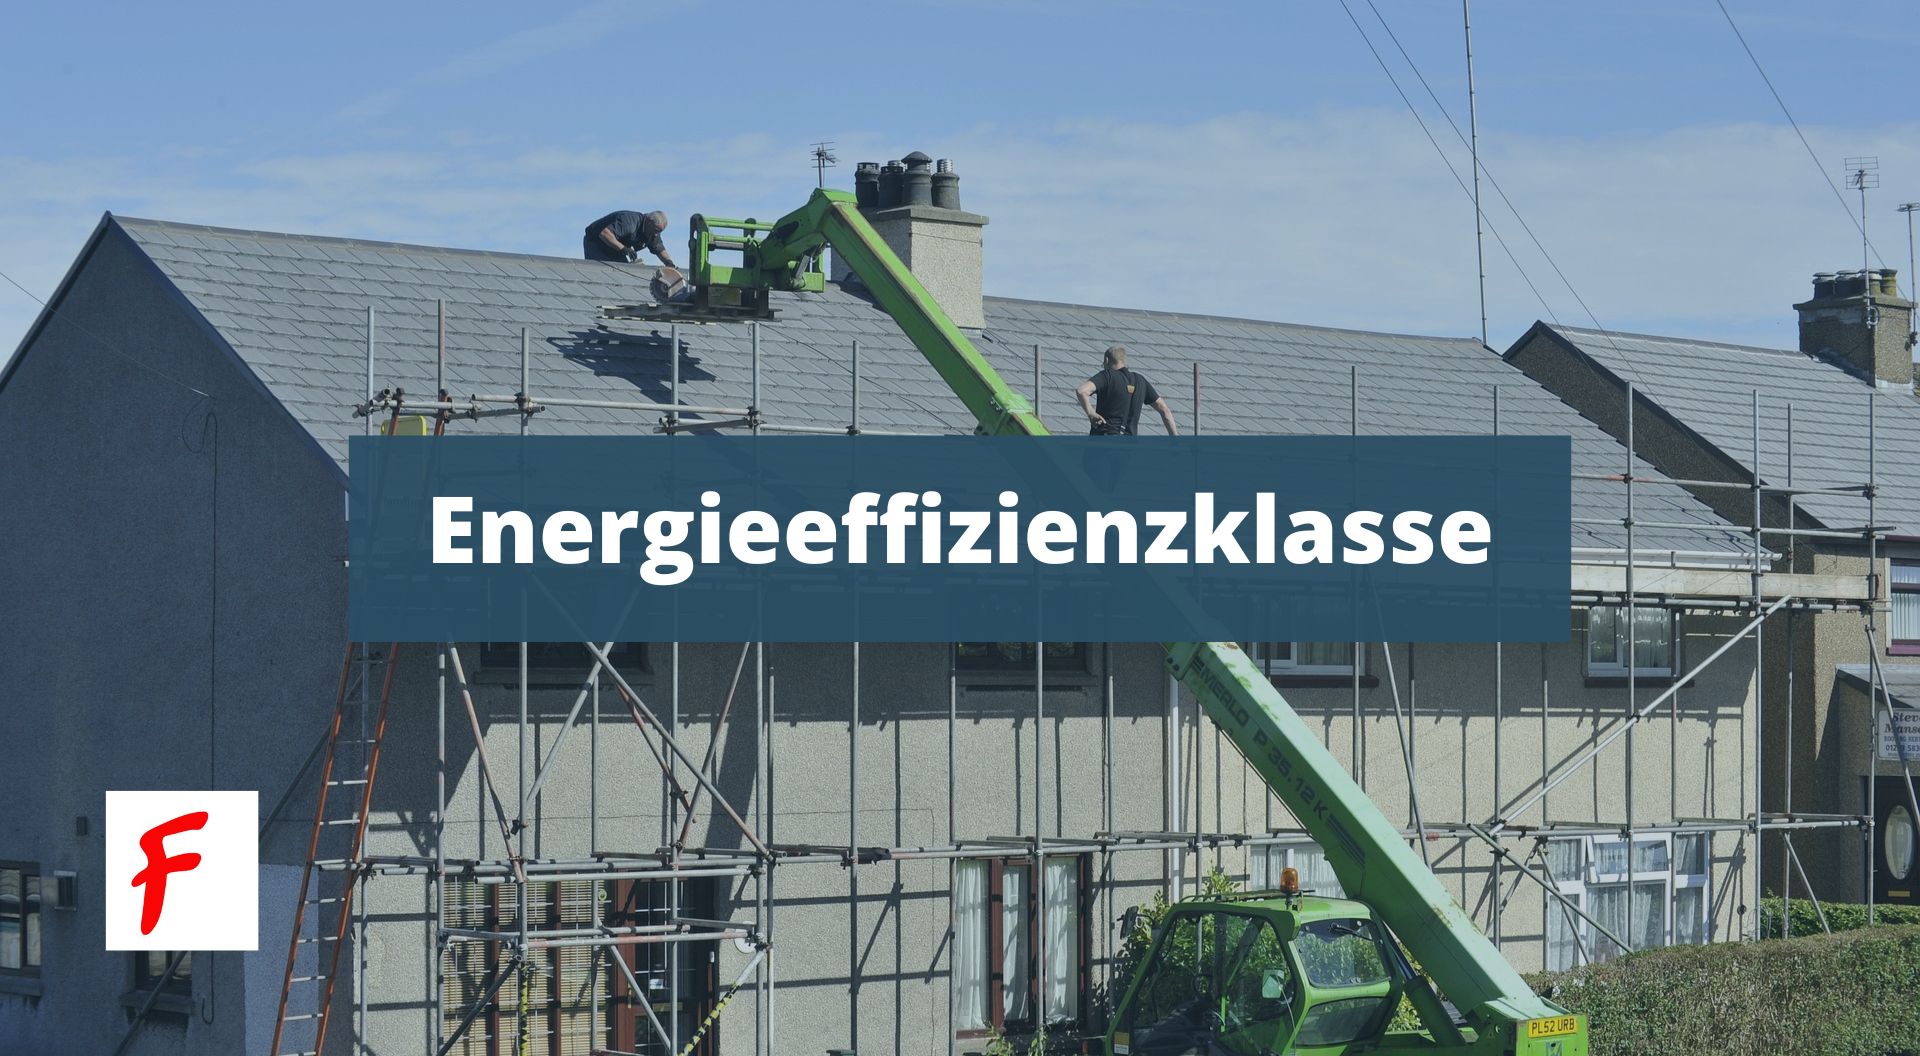 Энергоэффективность зданий в Германии